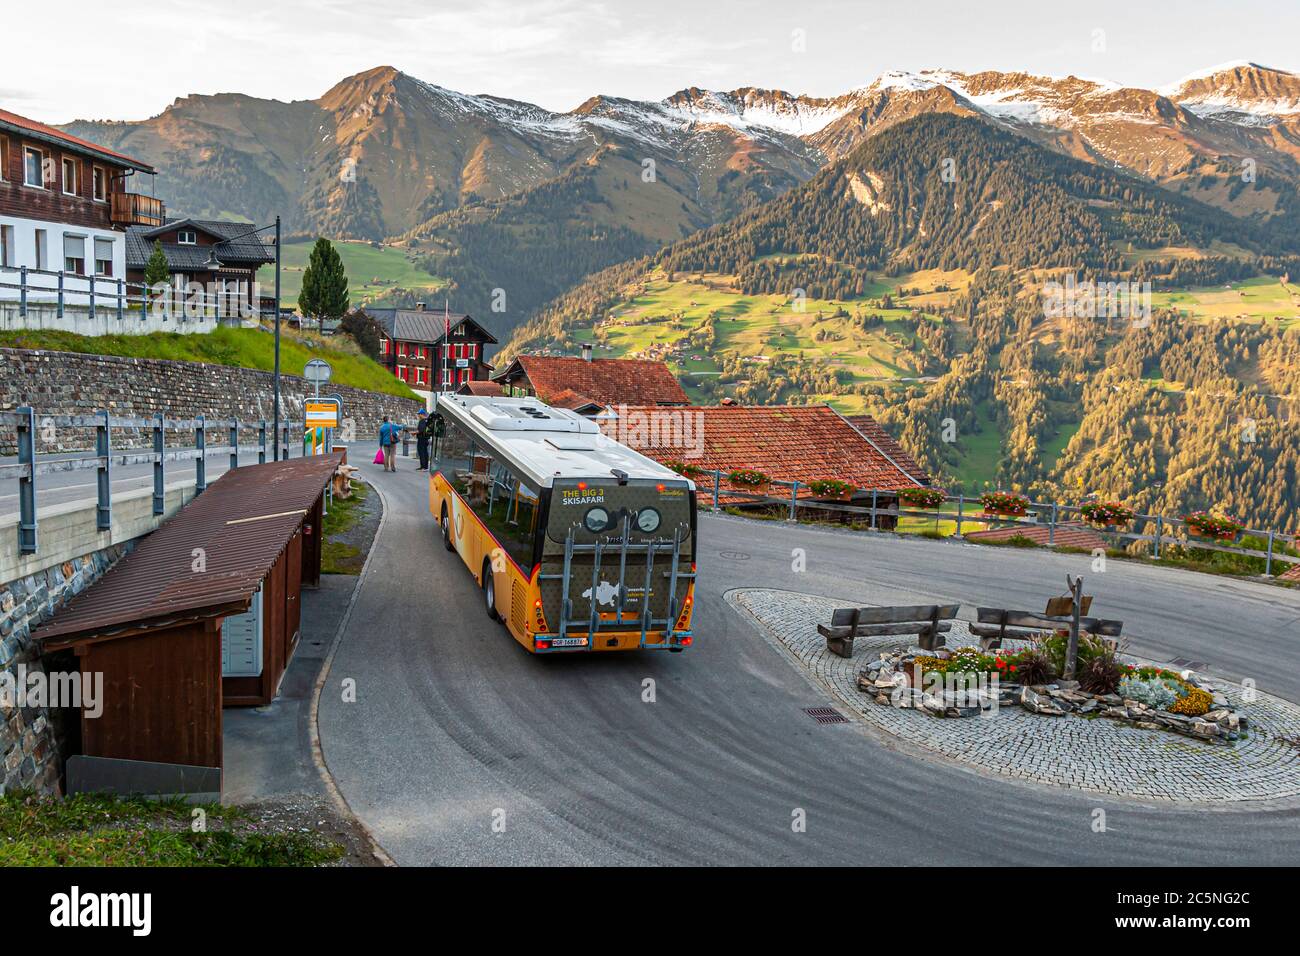 Postbus terminus in Tschiertschen-Praden, Switzerland Stock Photo